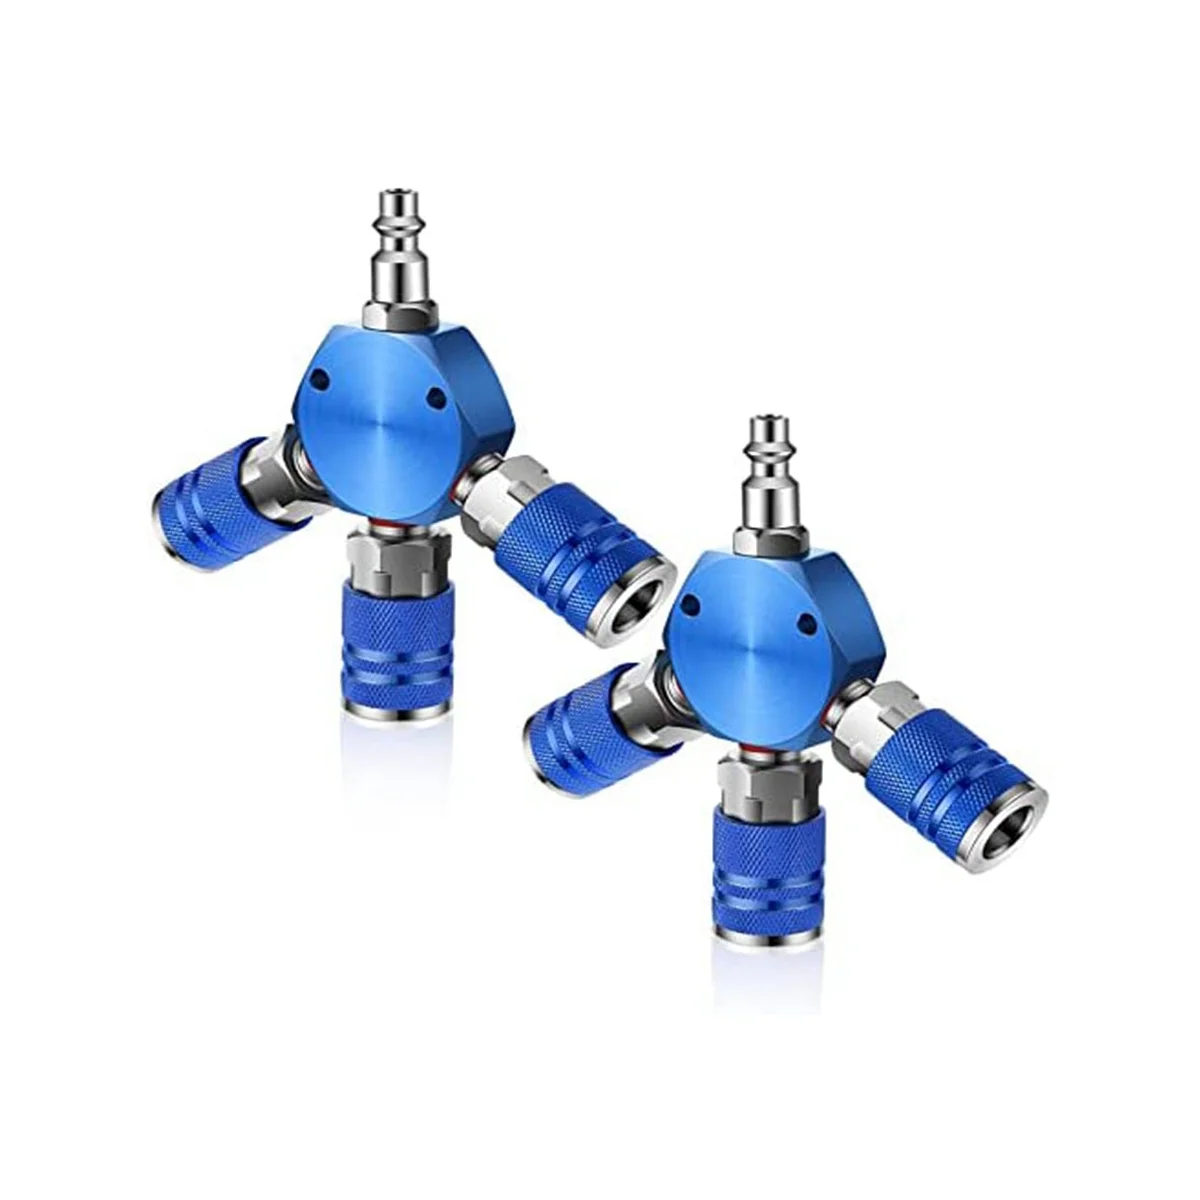 2 Шт Соединители для воздушного шланга 3-ходовые фитинги для воздушного шланга 1/4 дюйма NPT Фитинги для воздушного компрессора Аксессуары для воздушного компрессора (синий)